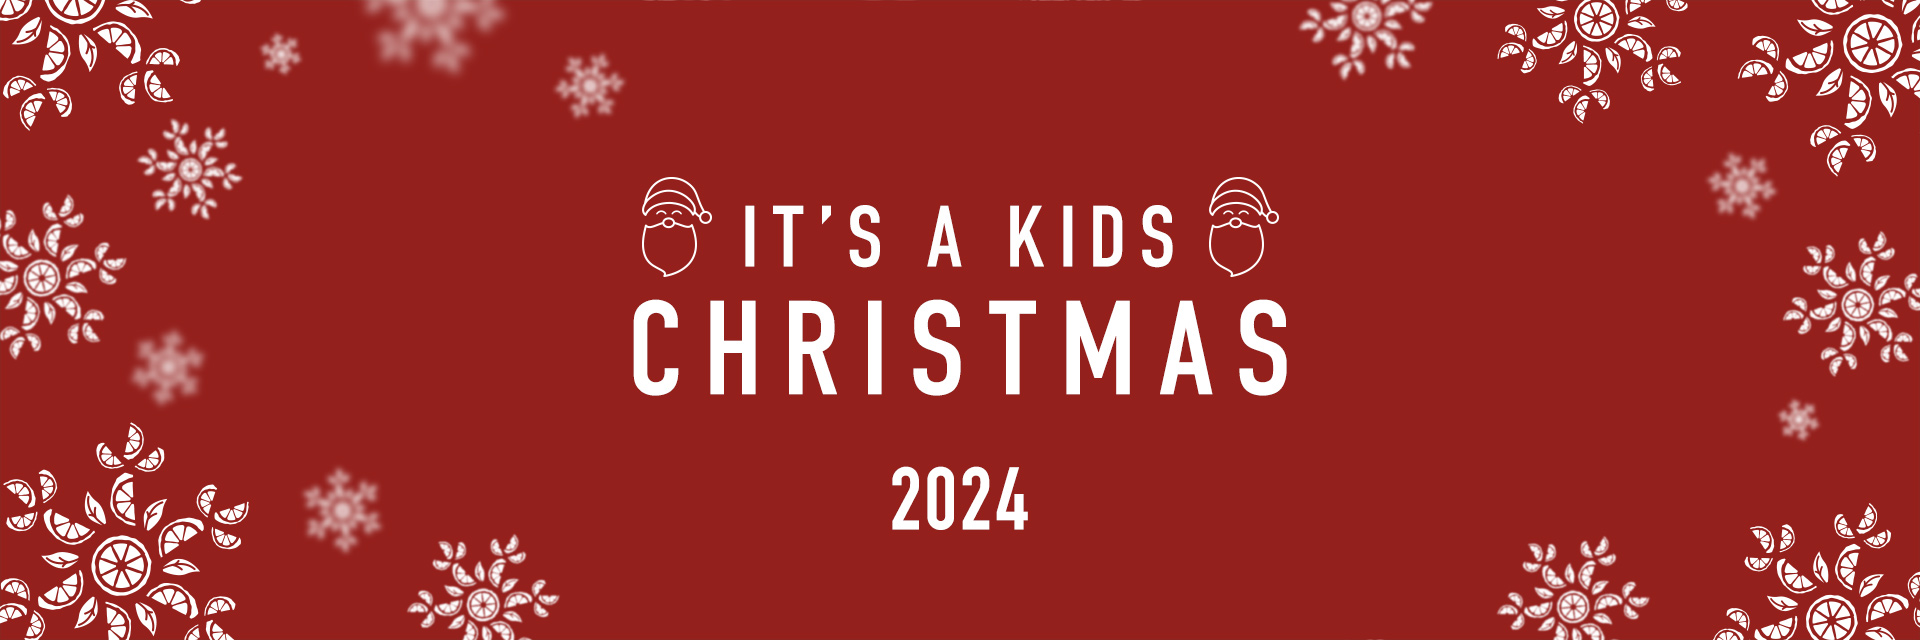 Kids Christmas Menu 2024 at Harvester Port Solent